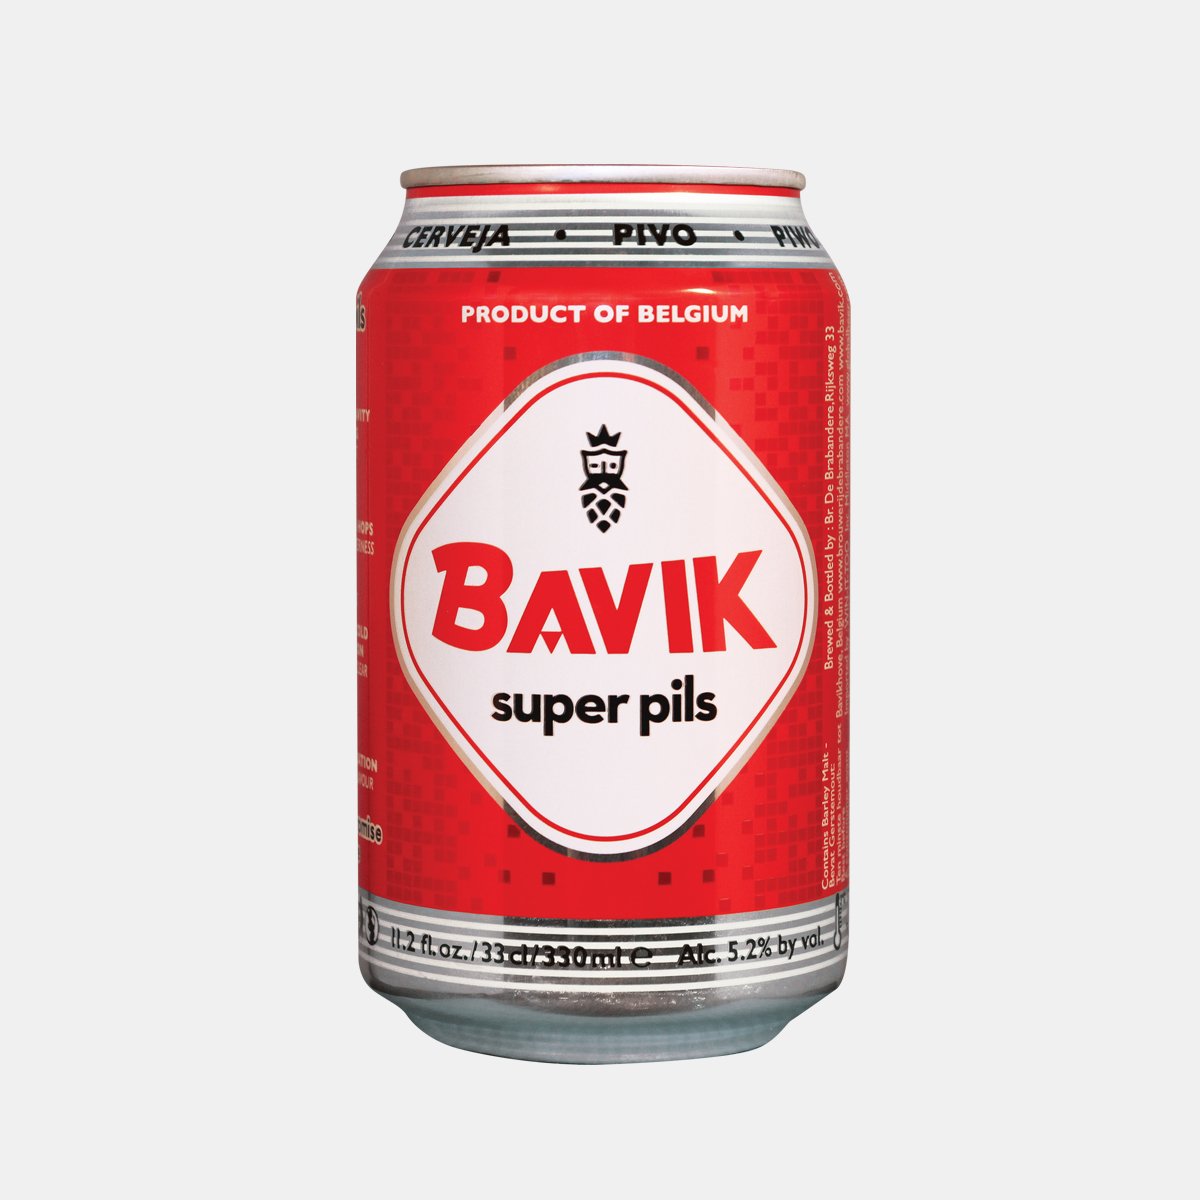 Bavik Super Pils (Belgium)